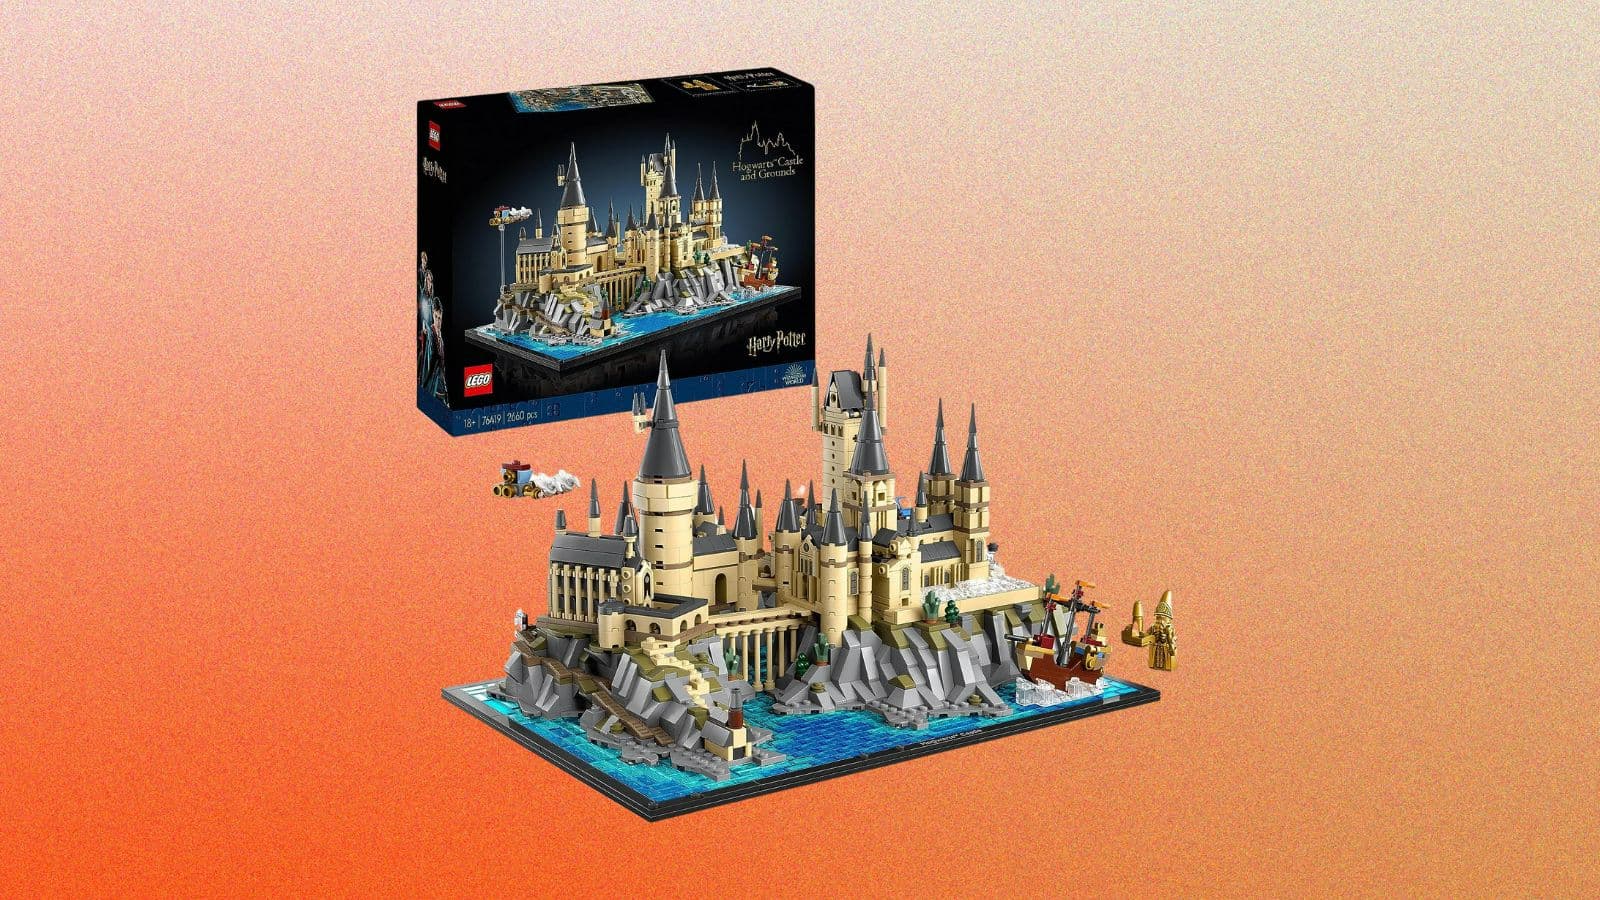 LEGO Castle pas cher, comparez les prix !